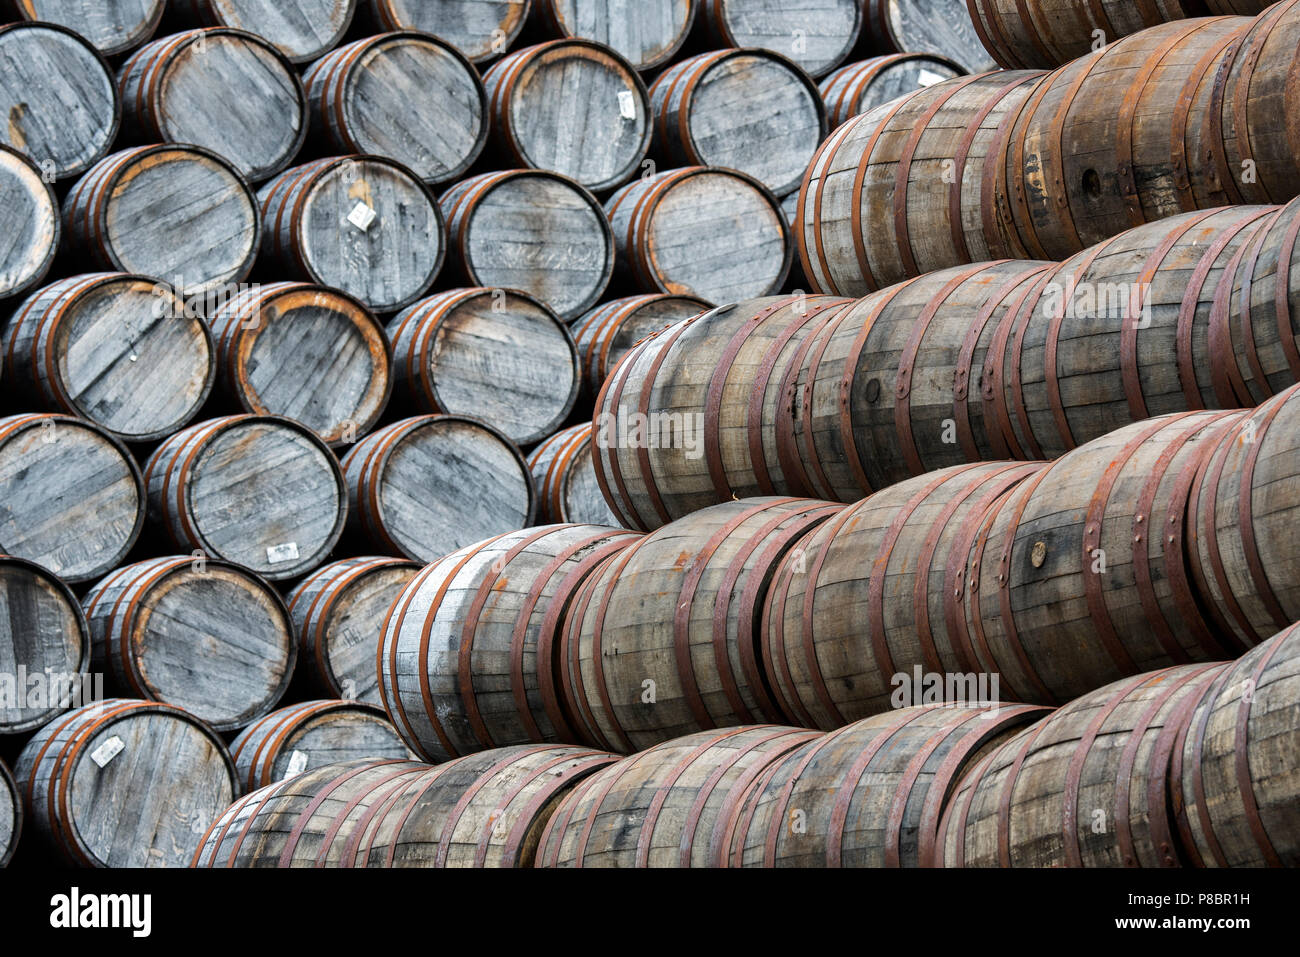 Große Stapel von weggeworfenen Whisky Fässern/Barrel auf Speyside Böttcherei, Craigellachie, Aberlour, Banffshire, Grampian, Schottland, Großbritannien Stockfoto